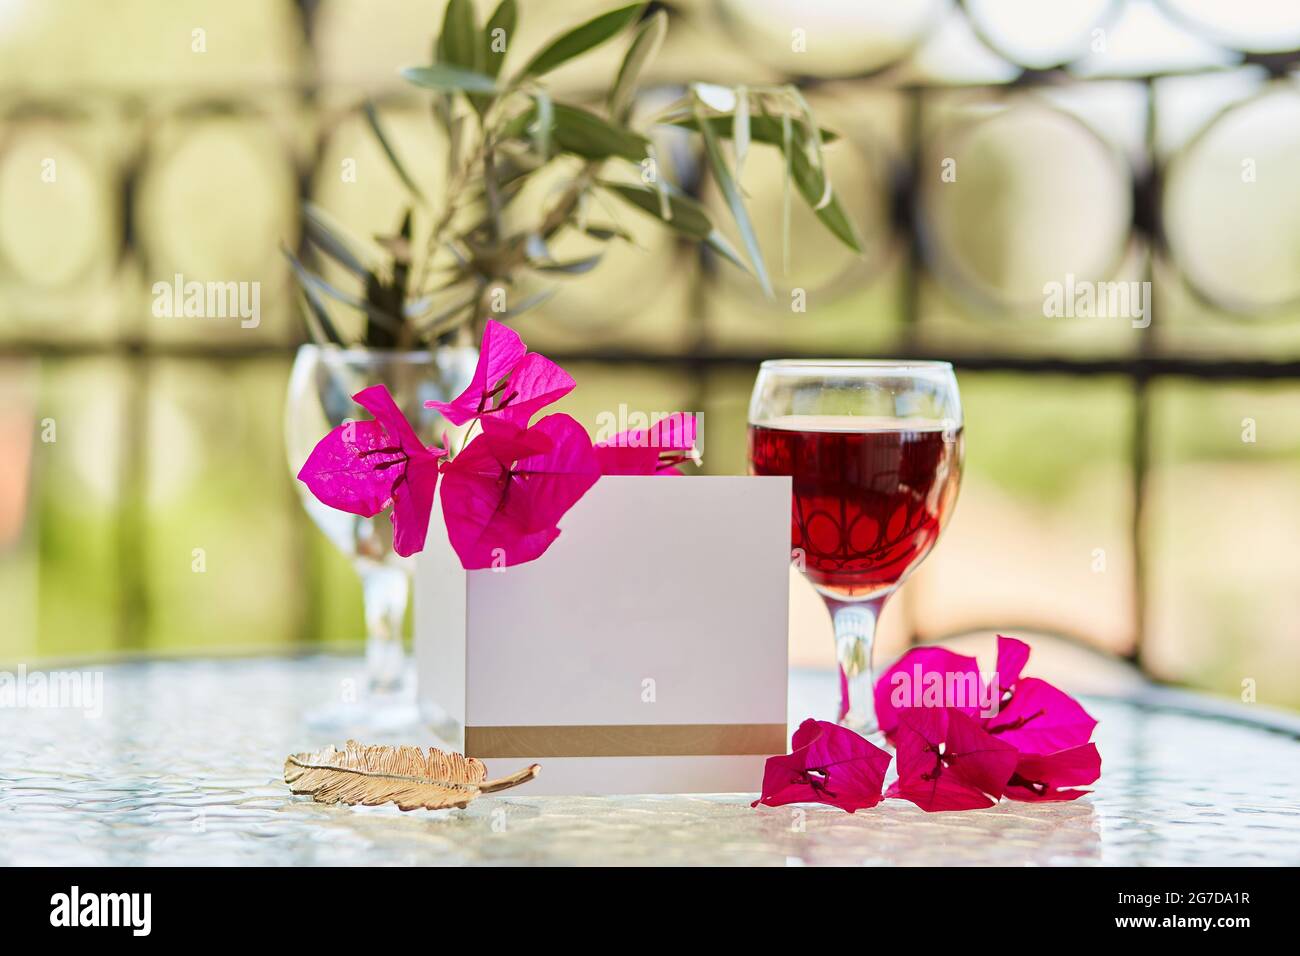 Elegantes Glas Rotwein. Dekorative rosa Blüten von Bougainvillea. Nachbau einer Postkarte oder Einladung. Festliches Weihnachtskonzept. Dekorative grüne Leine Stockfoto